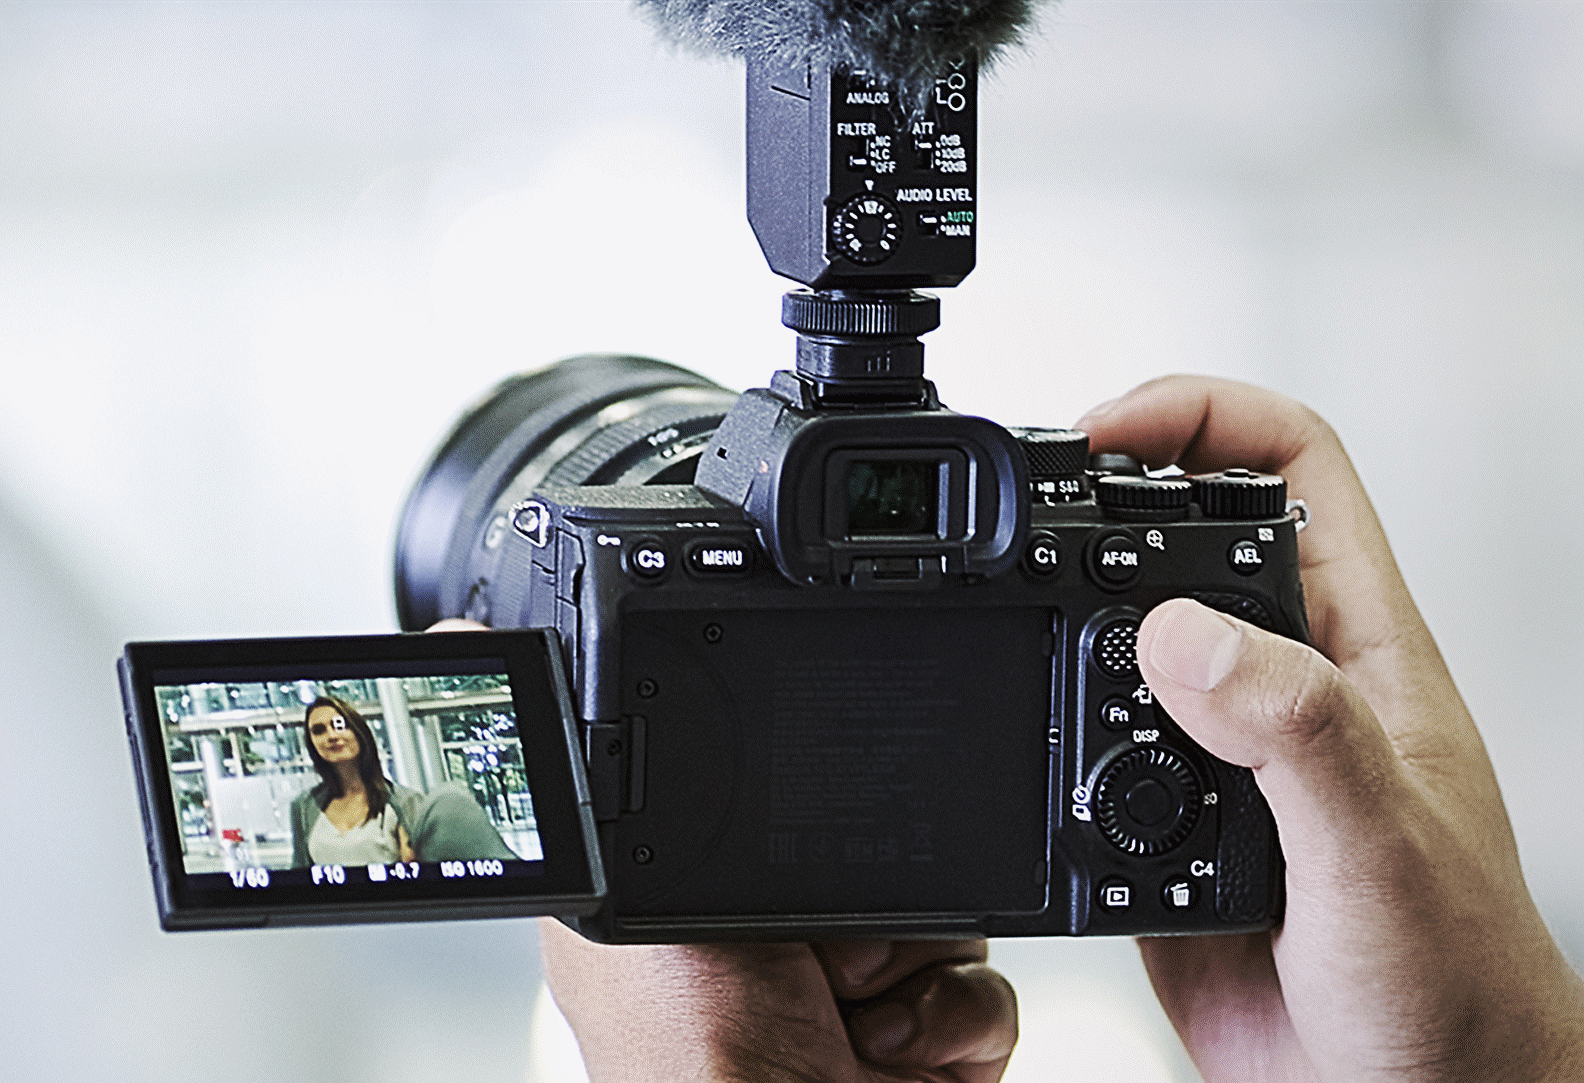 Fotografia tvorcu videí snímajúceho s aktívnym režimom stabilizácie obrazu vo fotoaparáte bez akéhokoľvek iného vybavenia